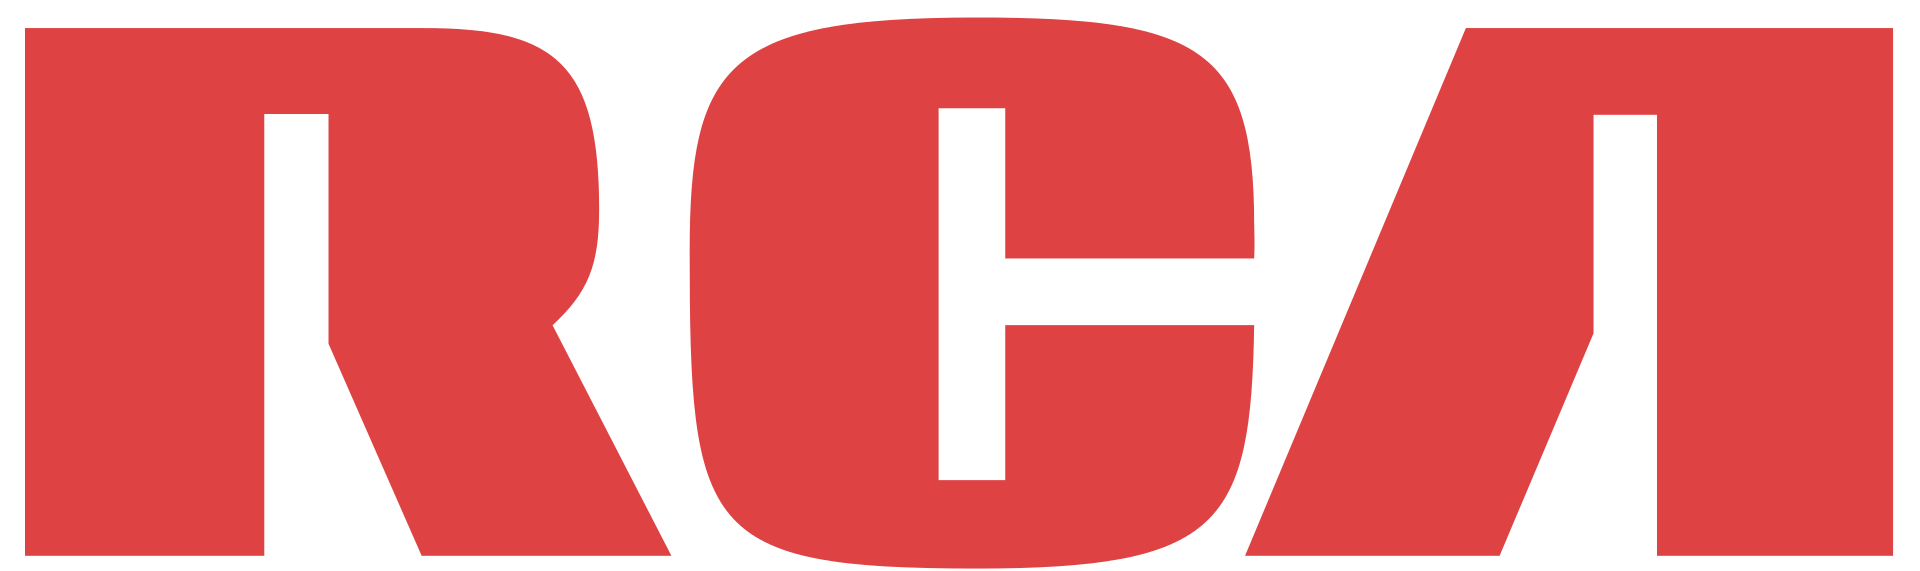 oryginalne logo RCA. Zdjęcie za pośrednictwem Wikipedii .